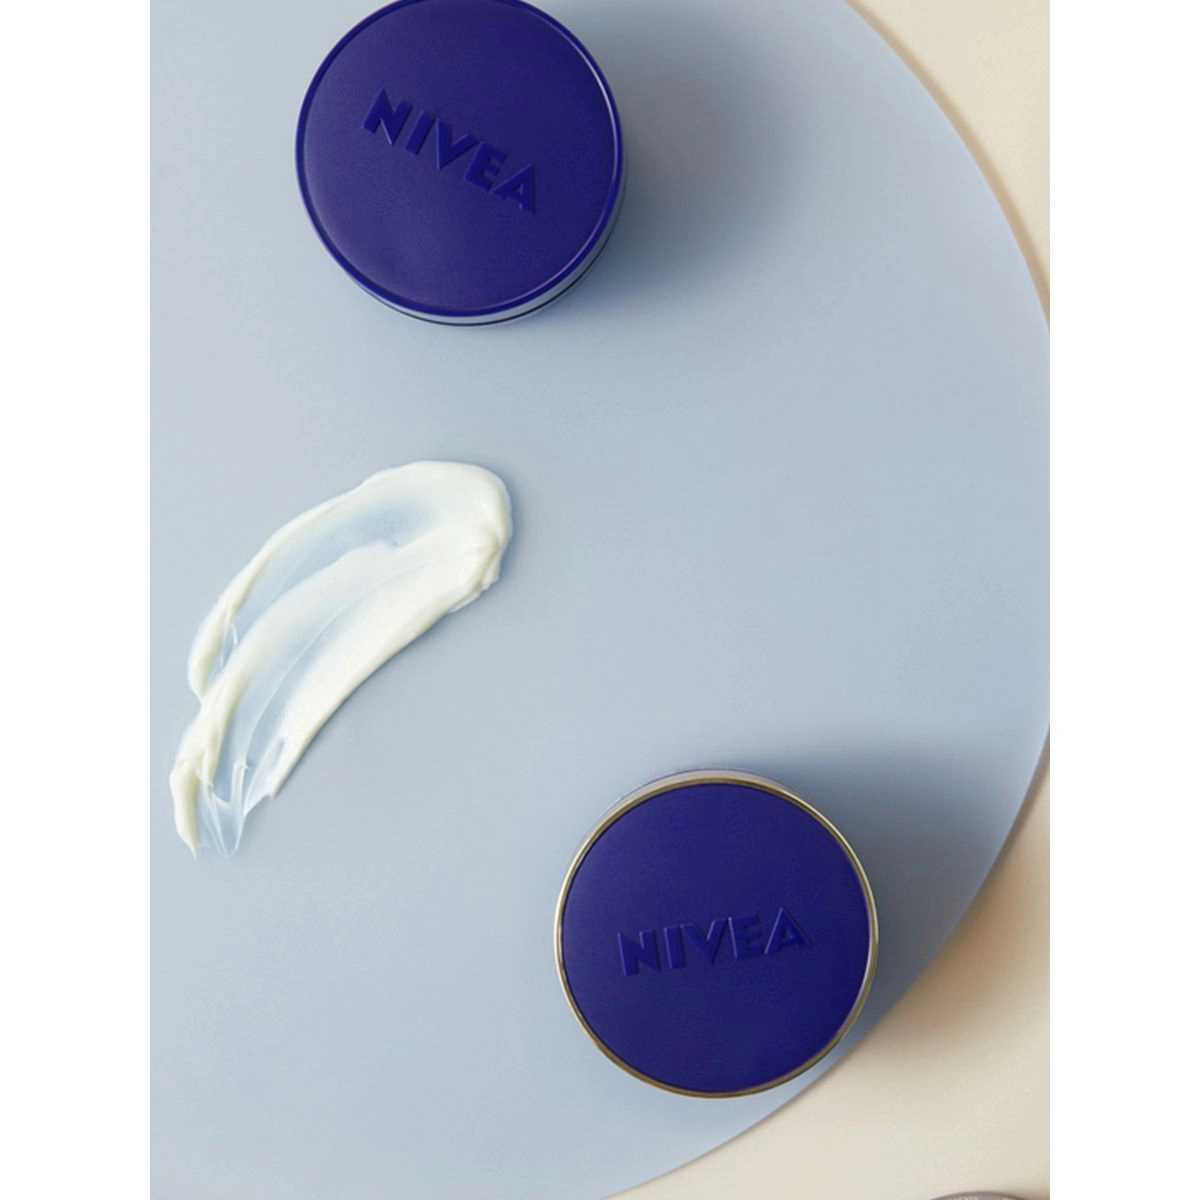 Nivea Восстанавливающий ночной крем для лица, против морщин Q10 Power, 50 мл - фото N7